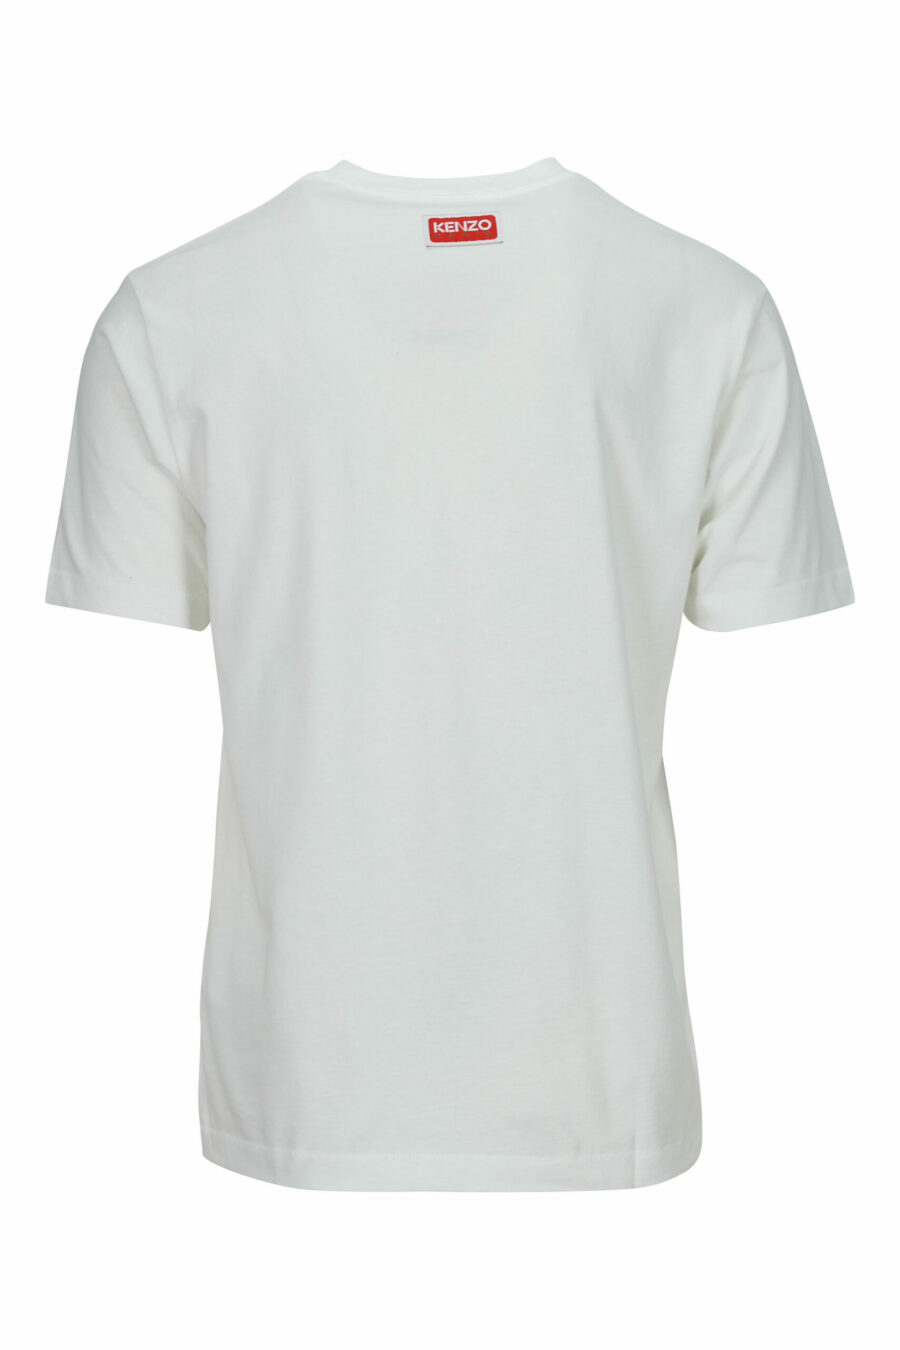 T-shirt branca de tamanho grande com um pequeno logótipo de tigre em relevo - 3612230571716 1 scaled